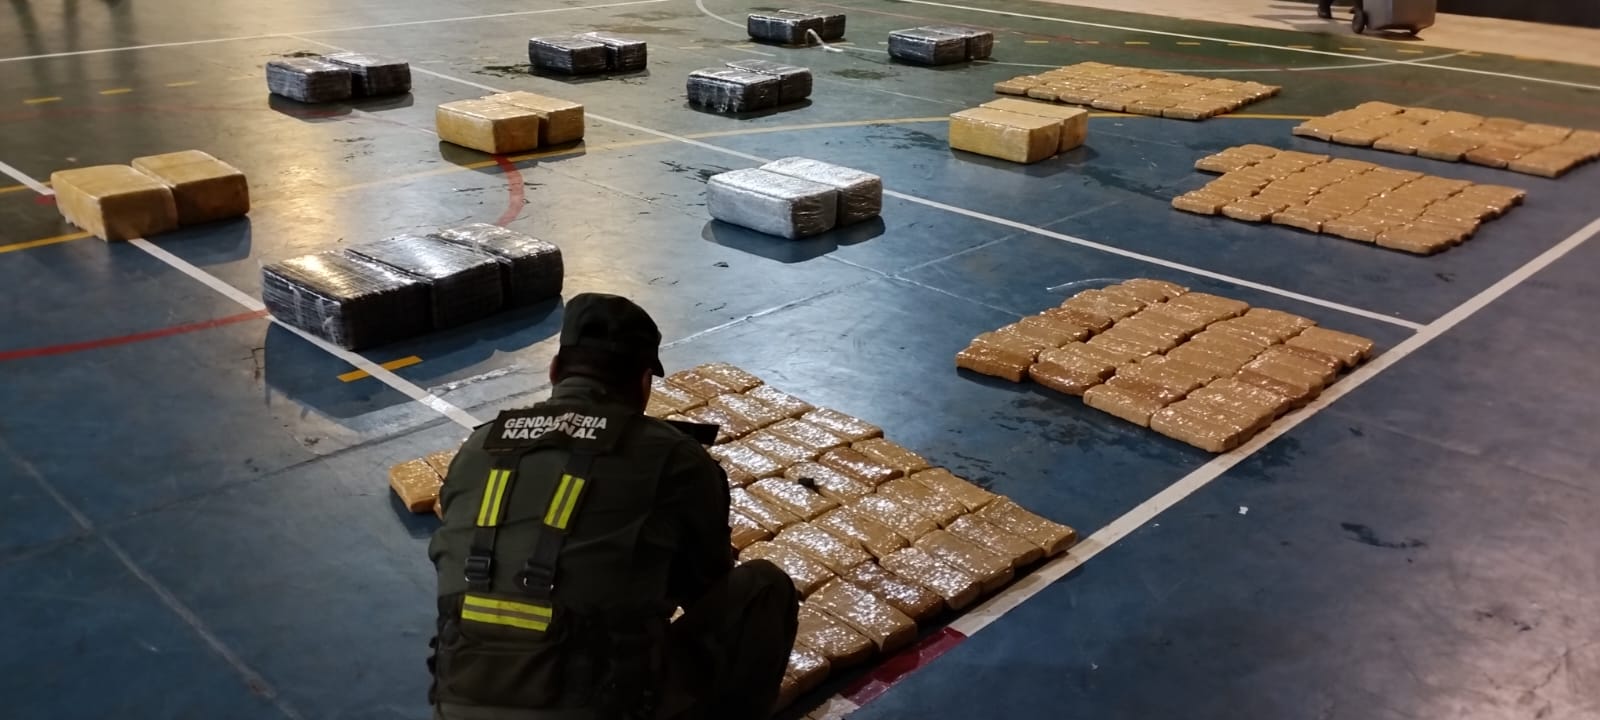 Gendarmería Nacional secuestró 470 kilos de marihuana: Resultado de procedimientos en las provincias de Misiones y Corrientes